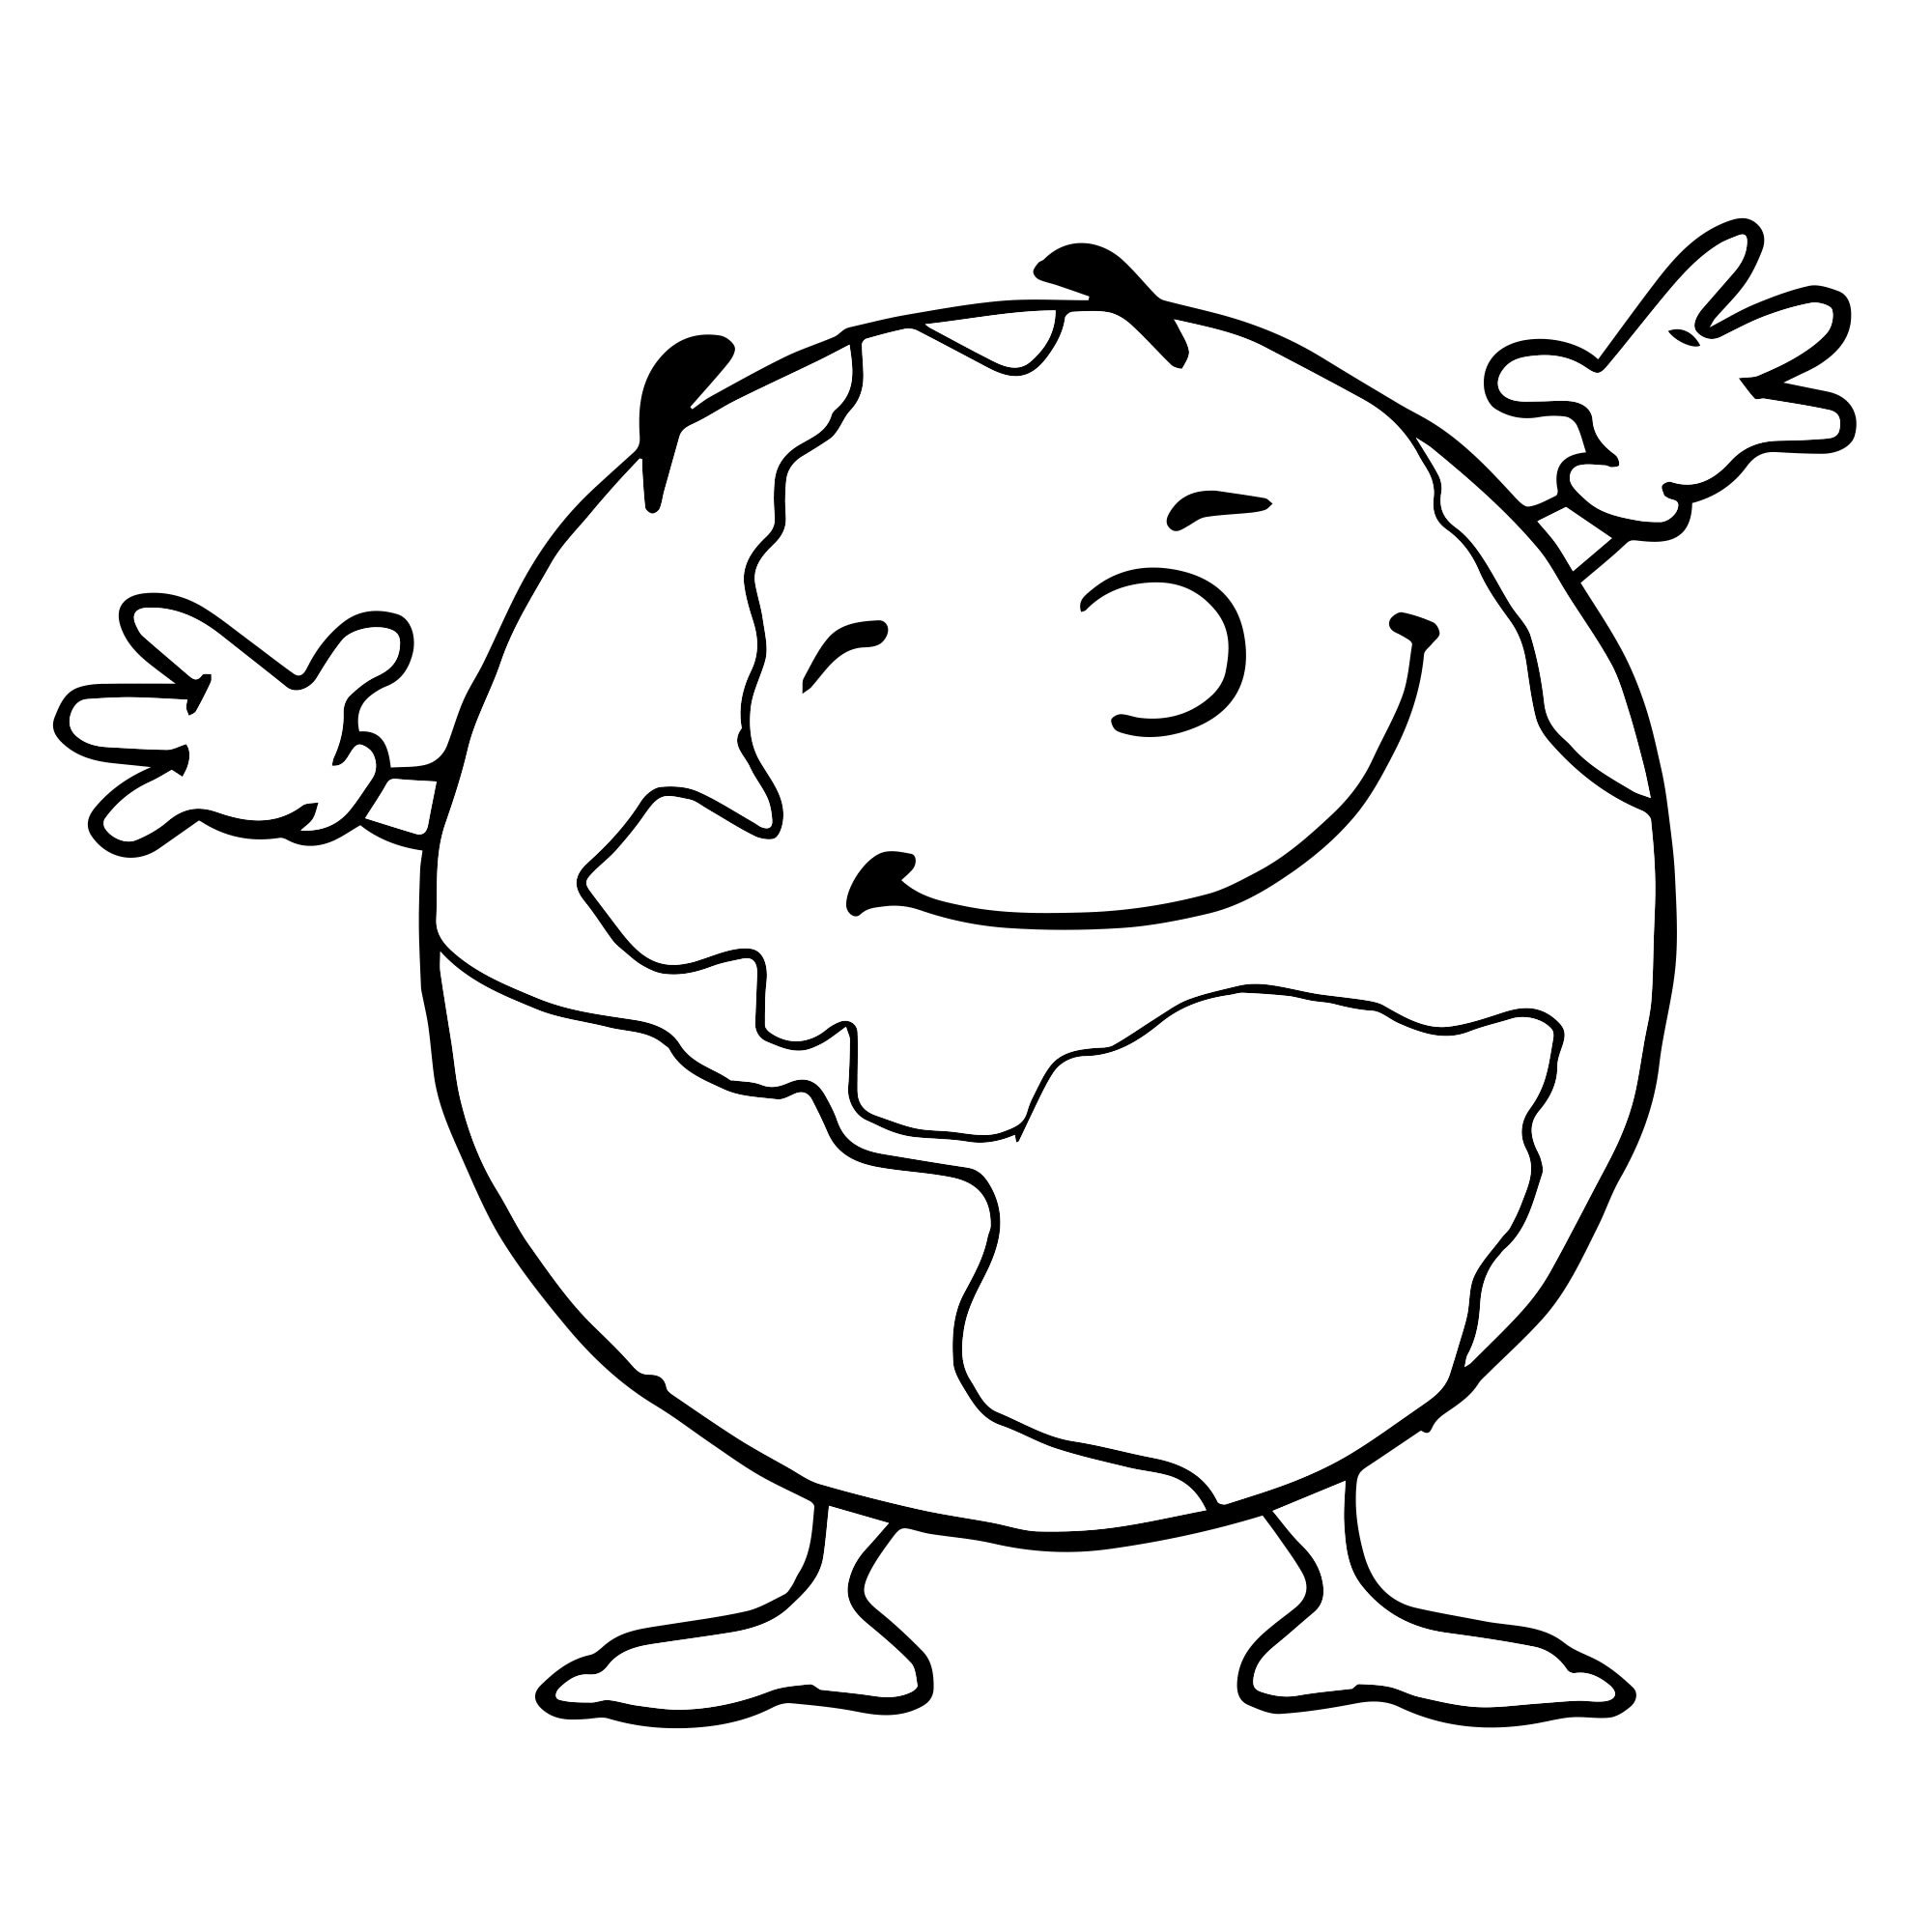 Земной шар раскраска для детей